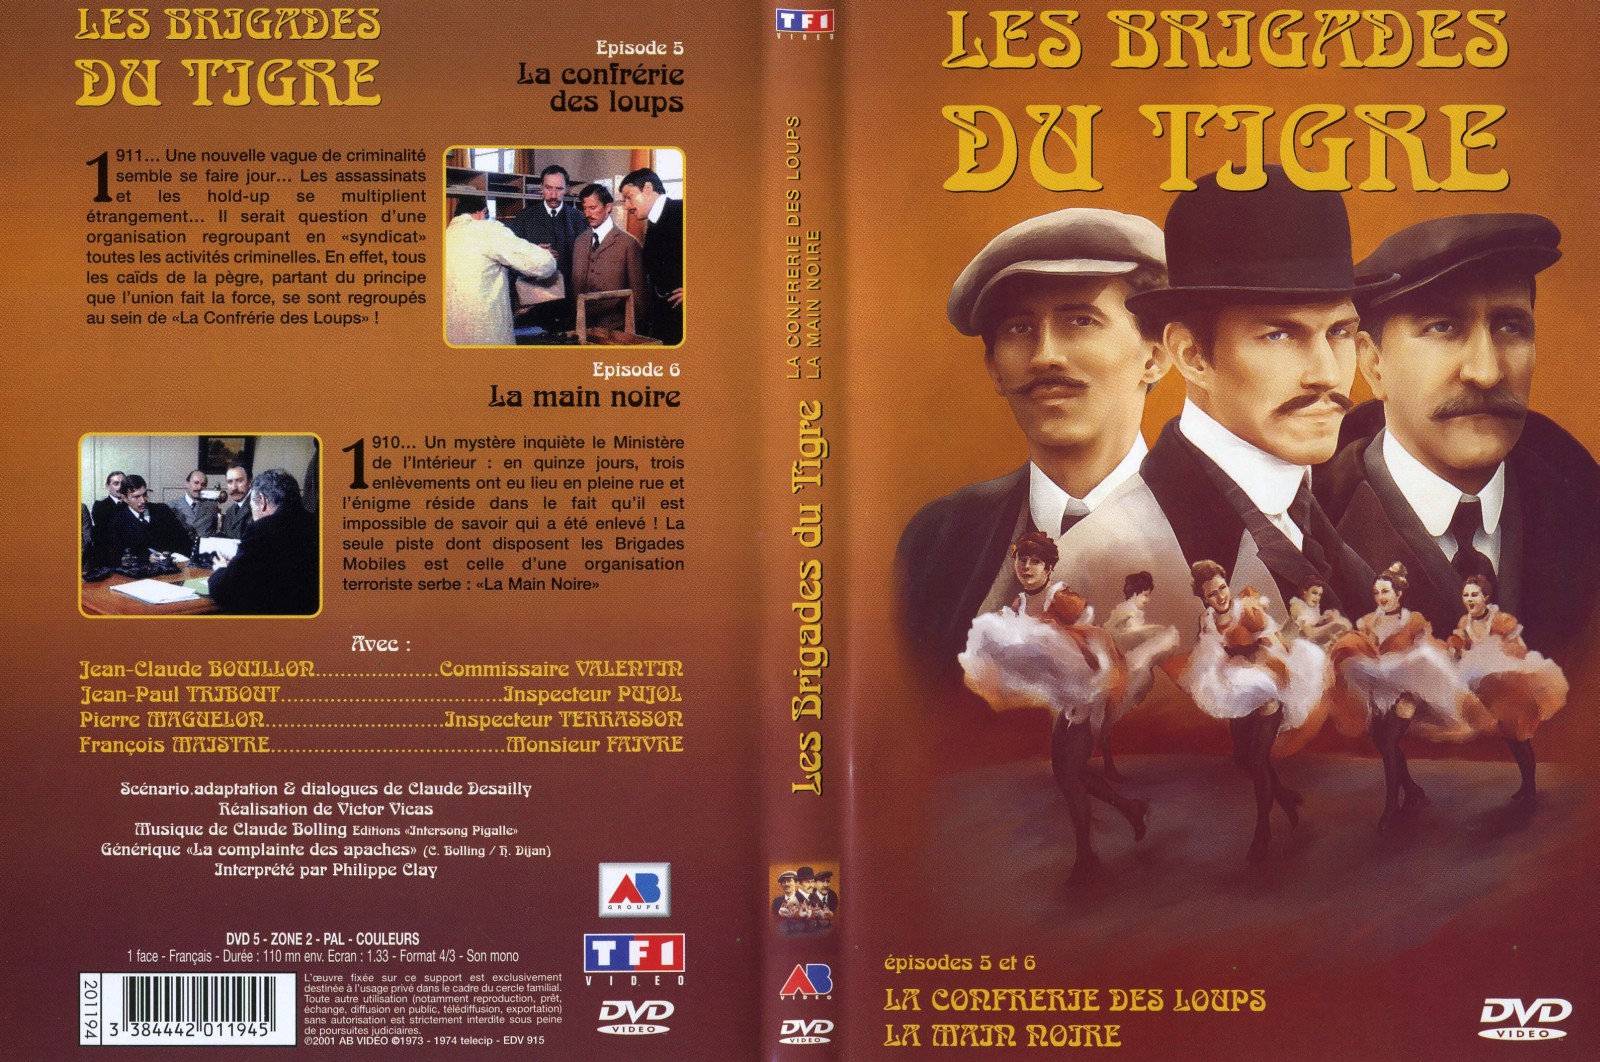 Jaquette DVD Les brigades du tigre vol 3